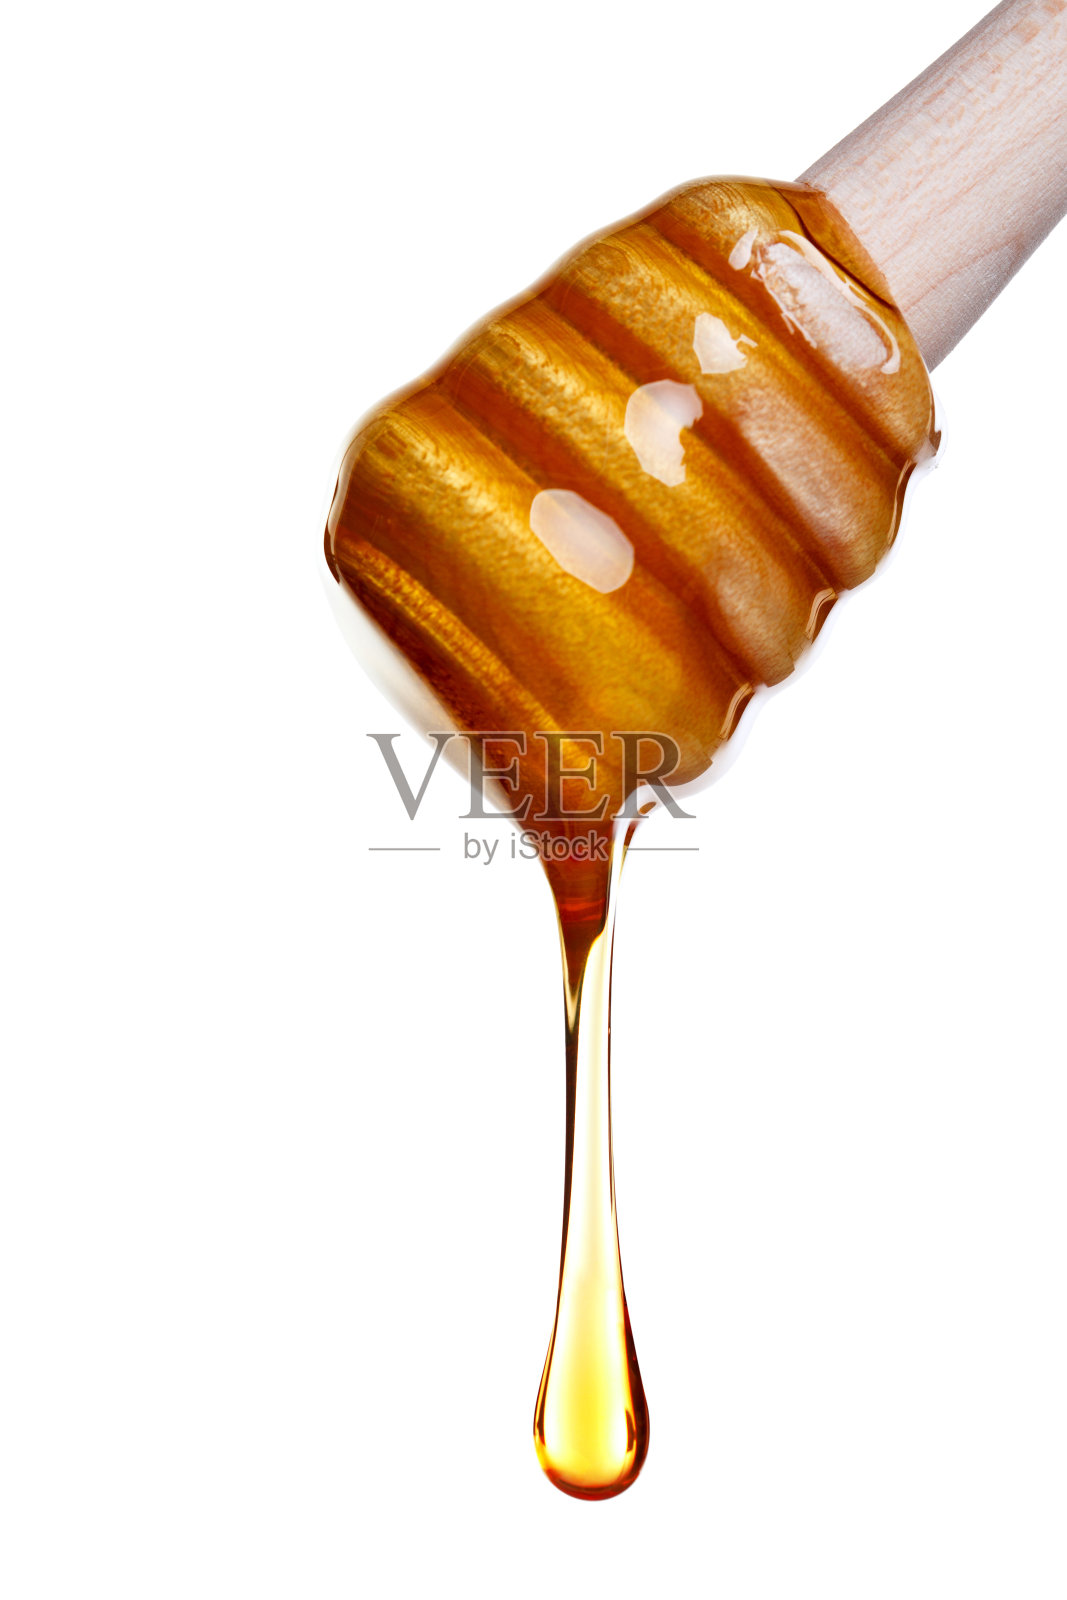 蜂蜜从木勺上滴下来照片摄影图片